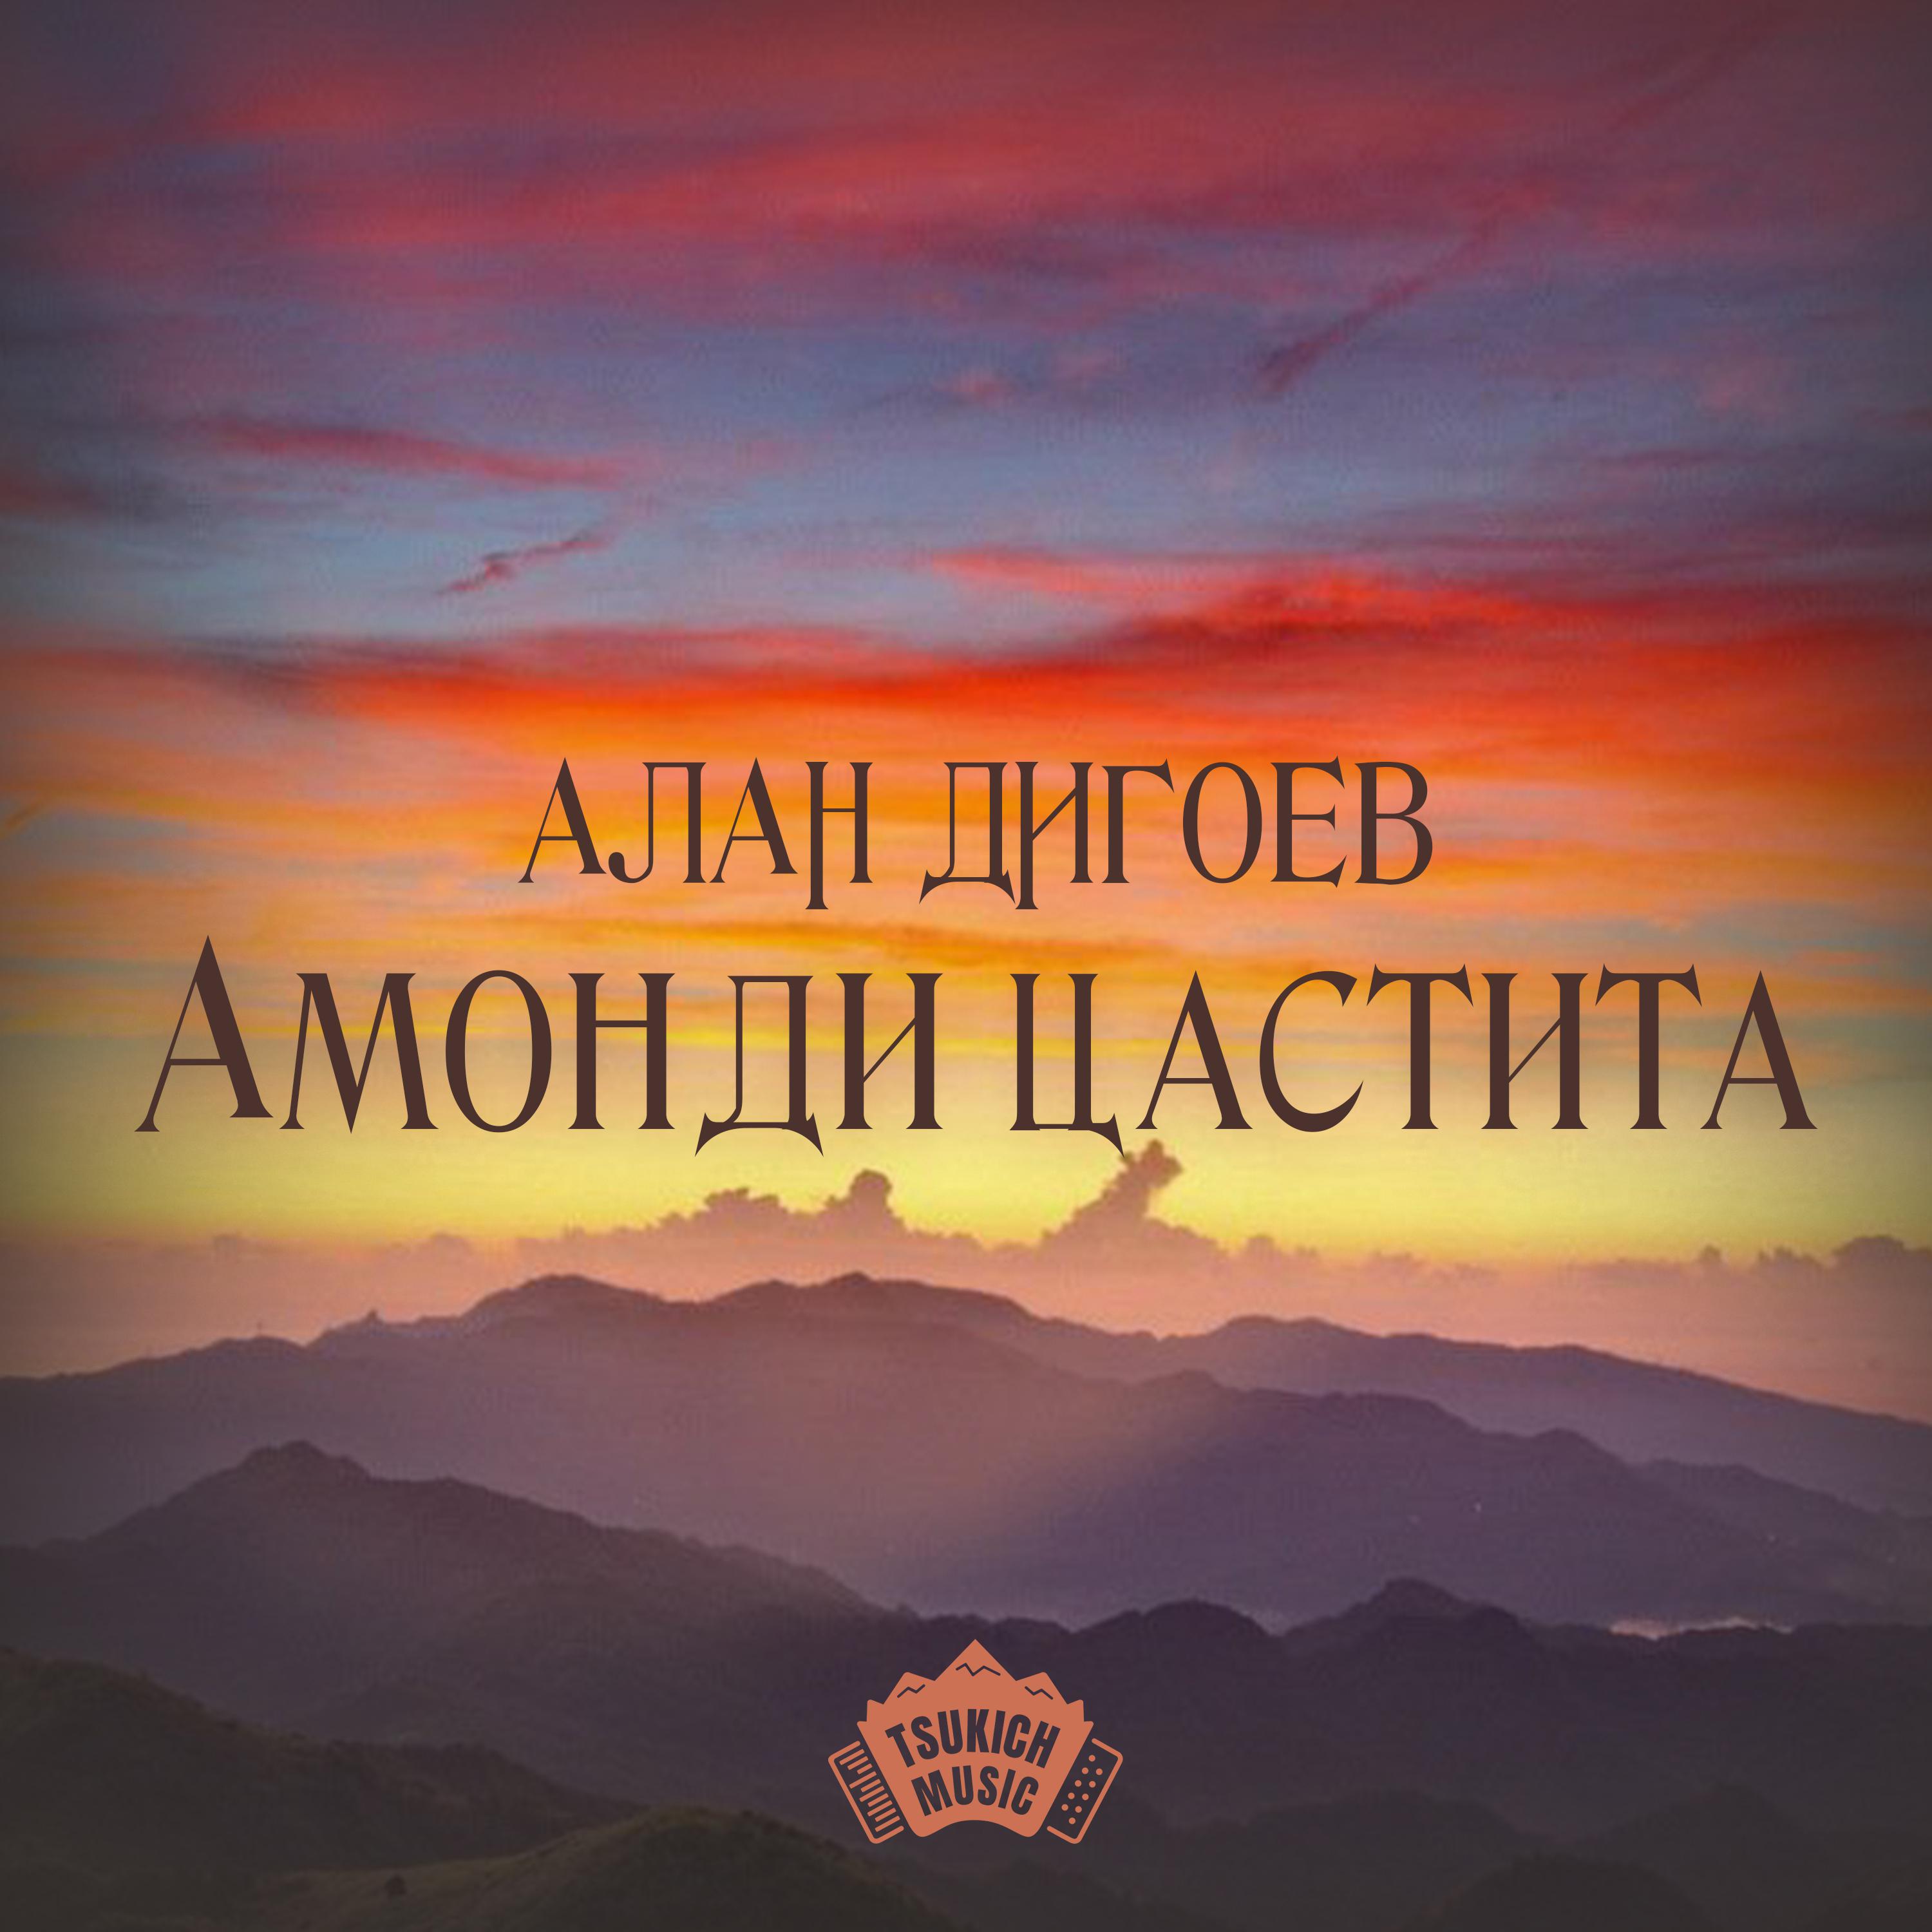 Постер альбома Амонди цастита